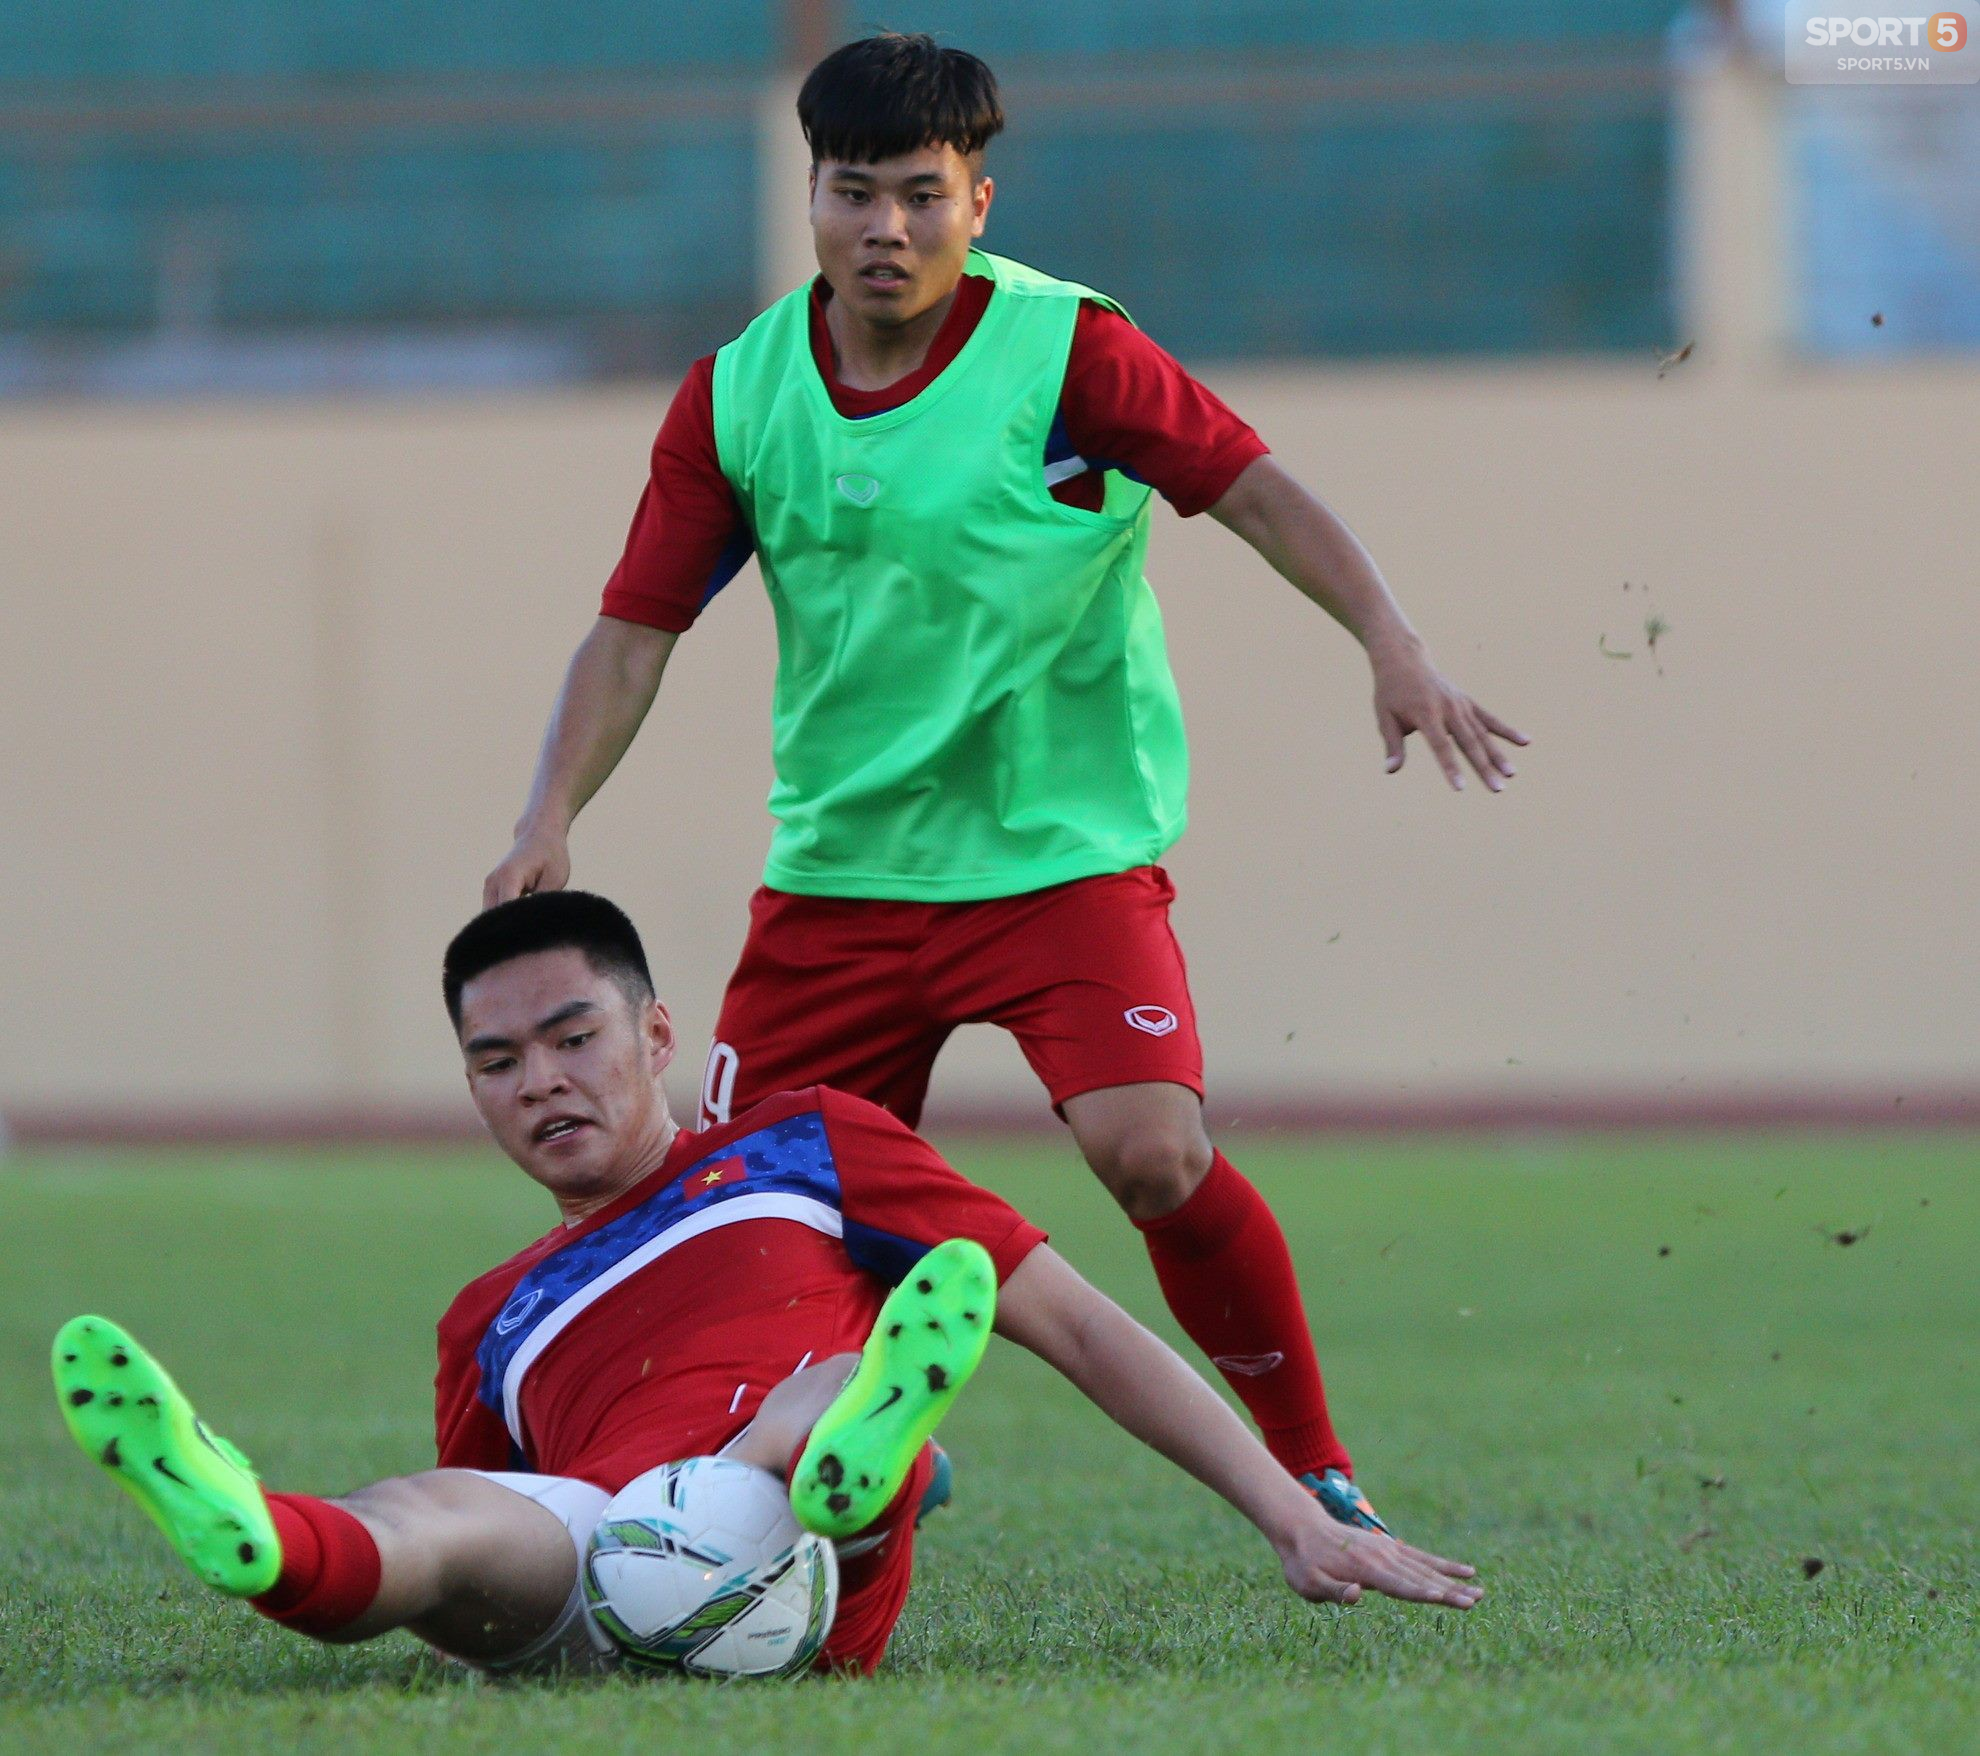 10 cầu thủ về nước dự thi THPT, U19 Việt Nam vẫn giành được trận hòa quý giá - Ảnh 2.